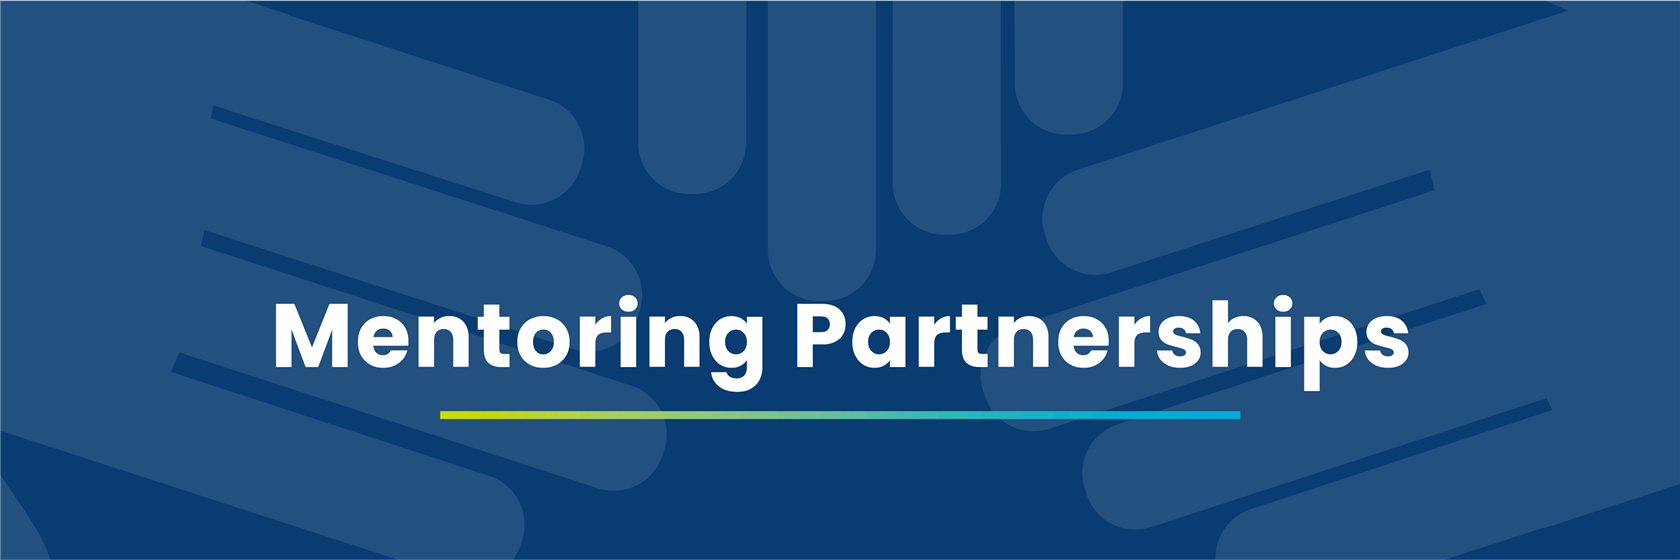 Mentoring Partnerships